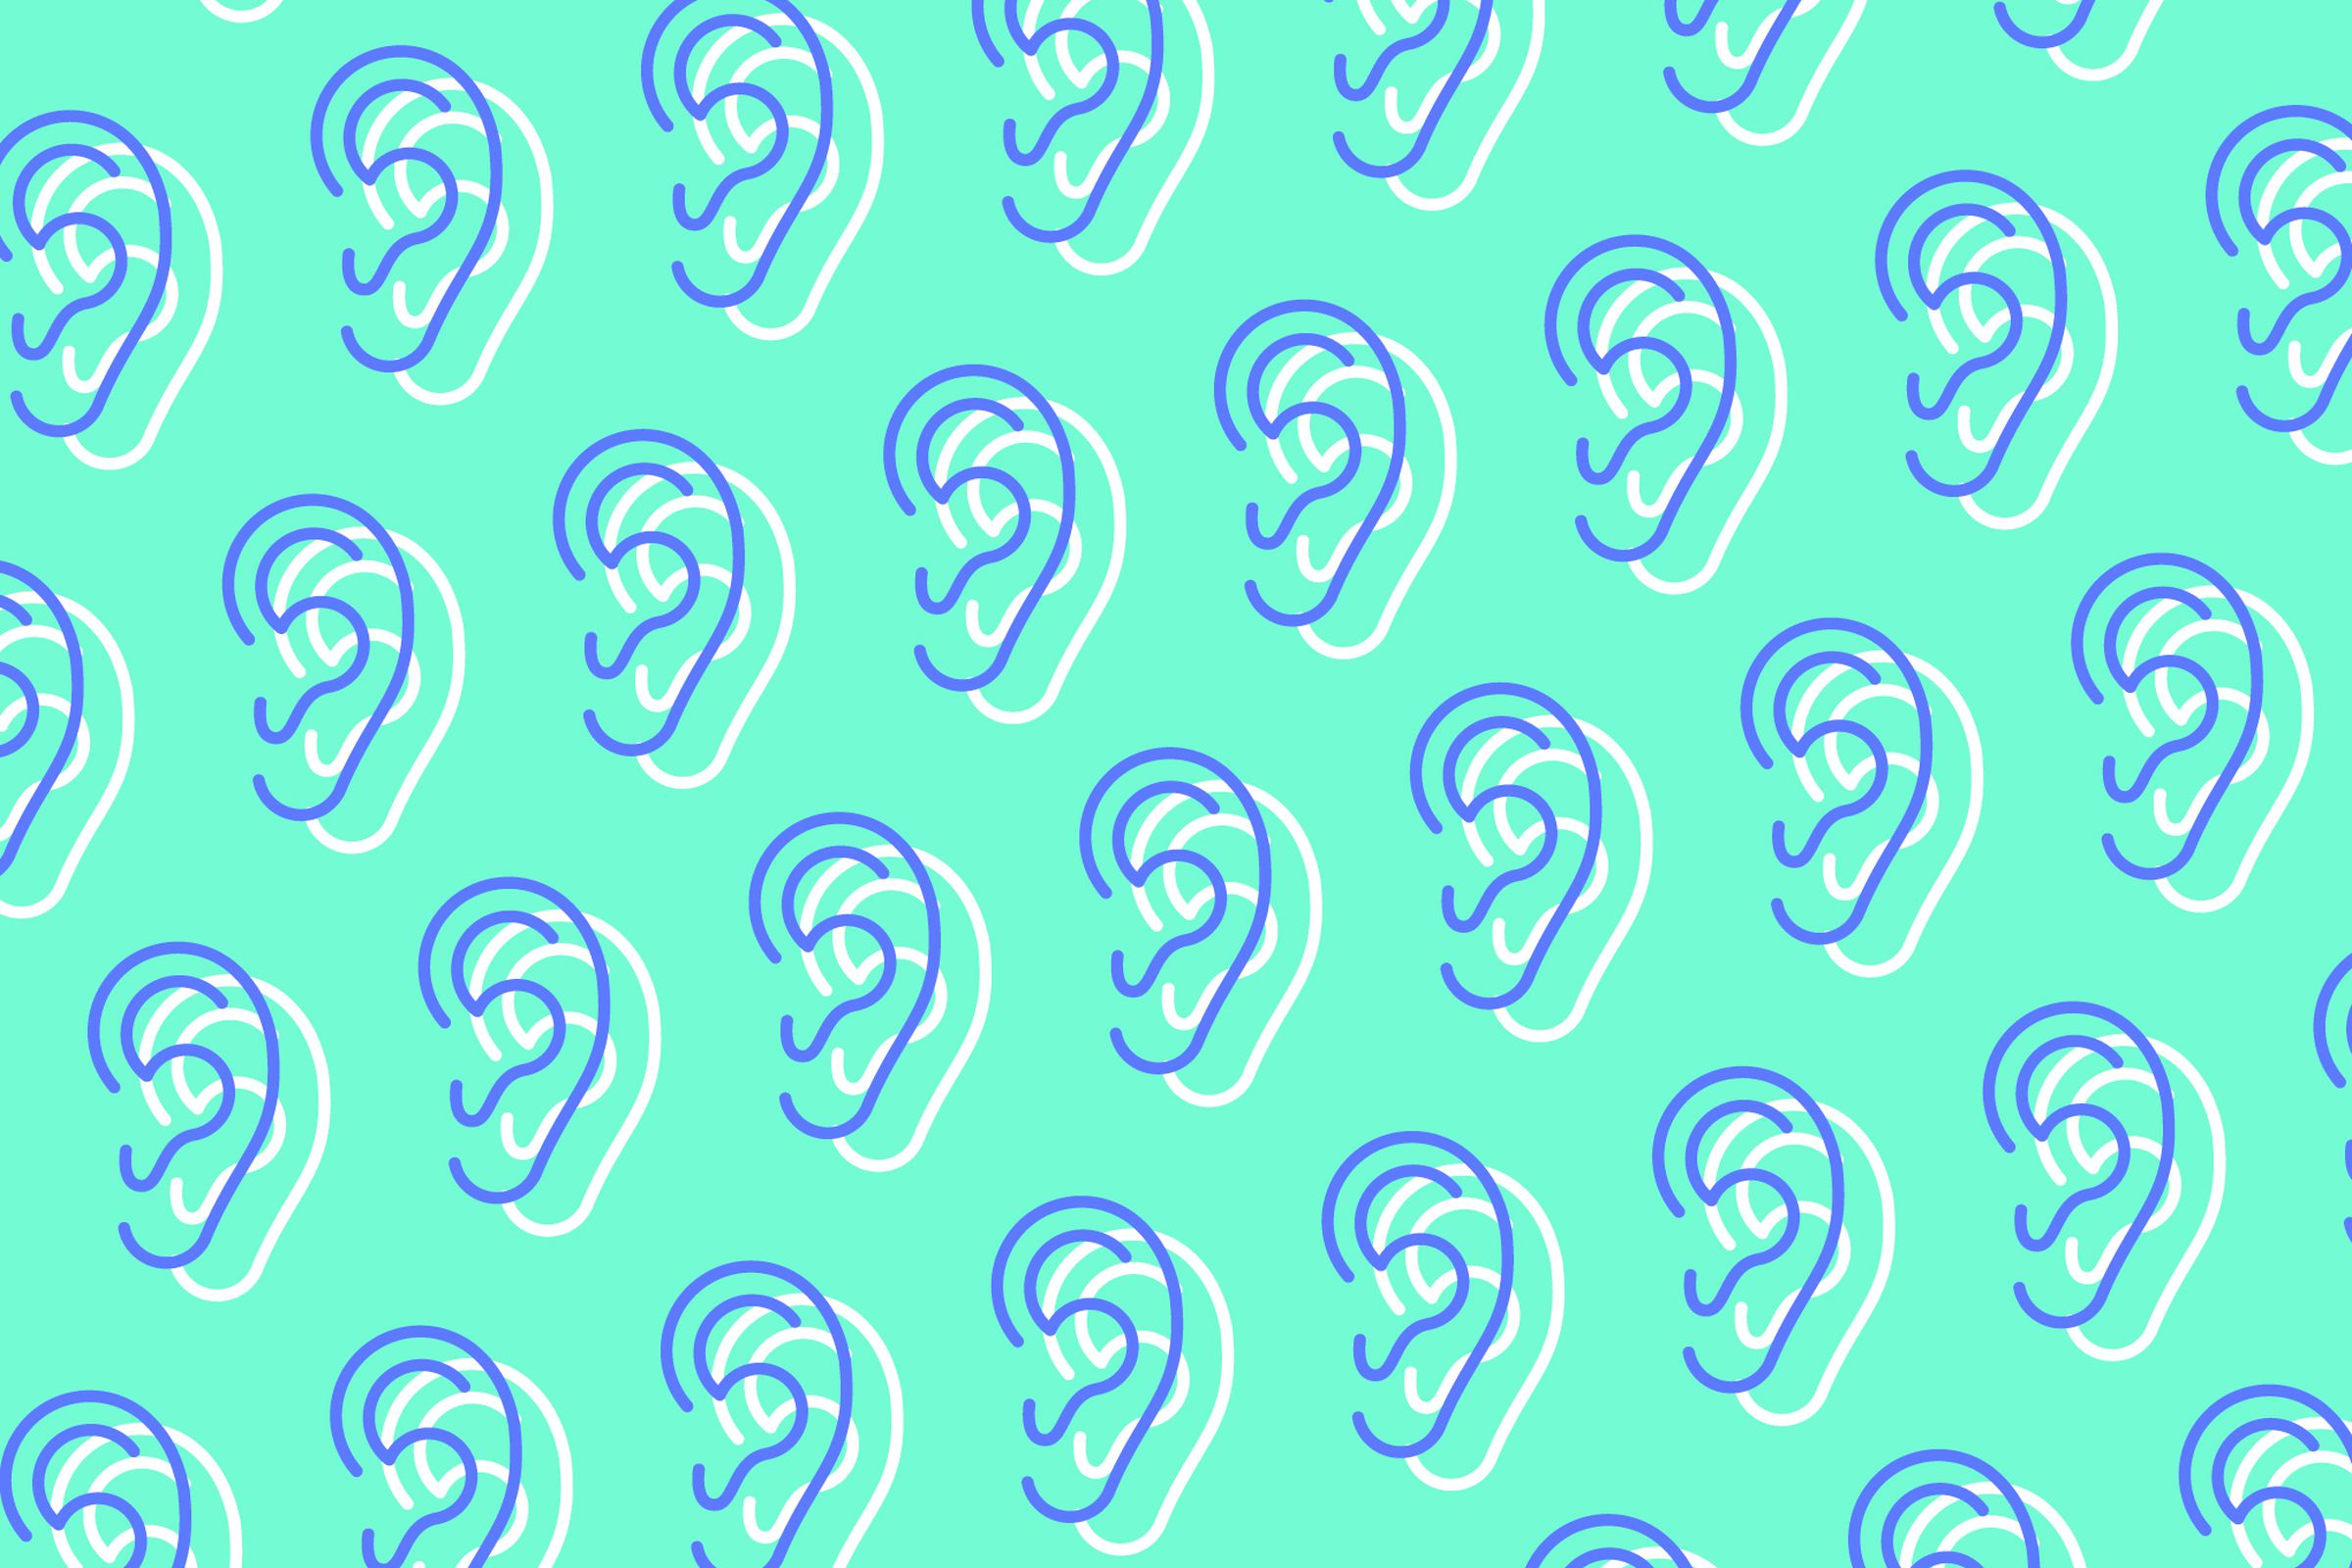 Ear pattern